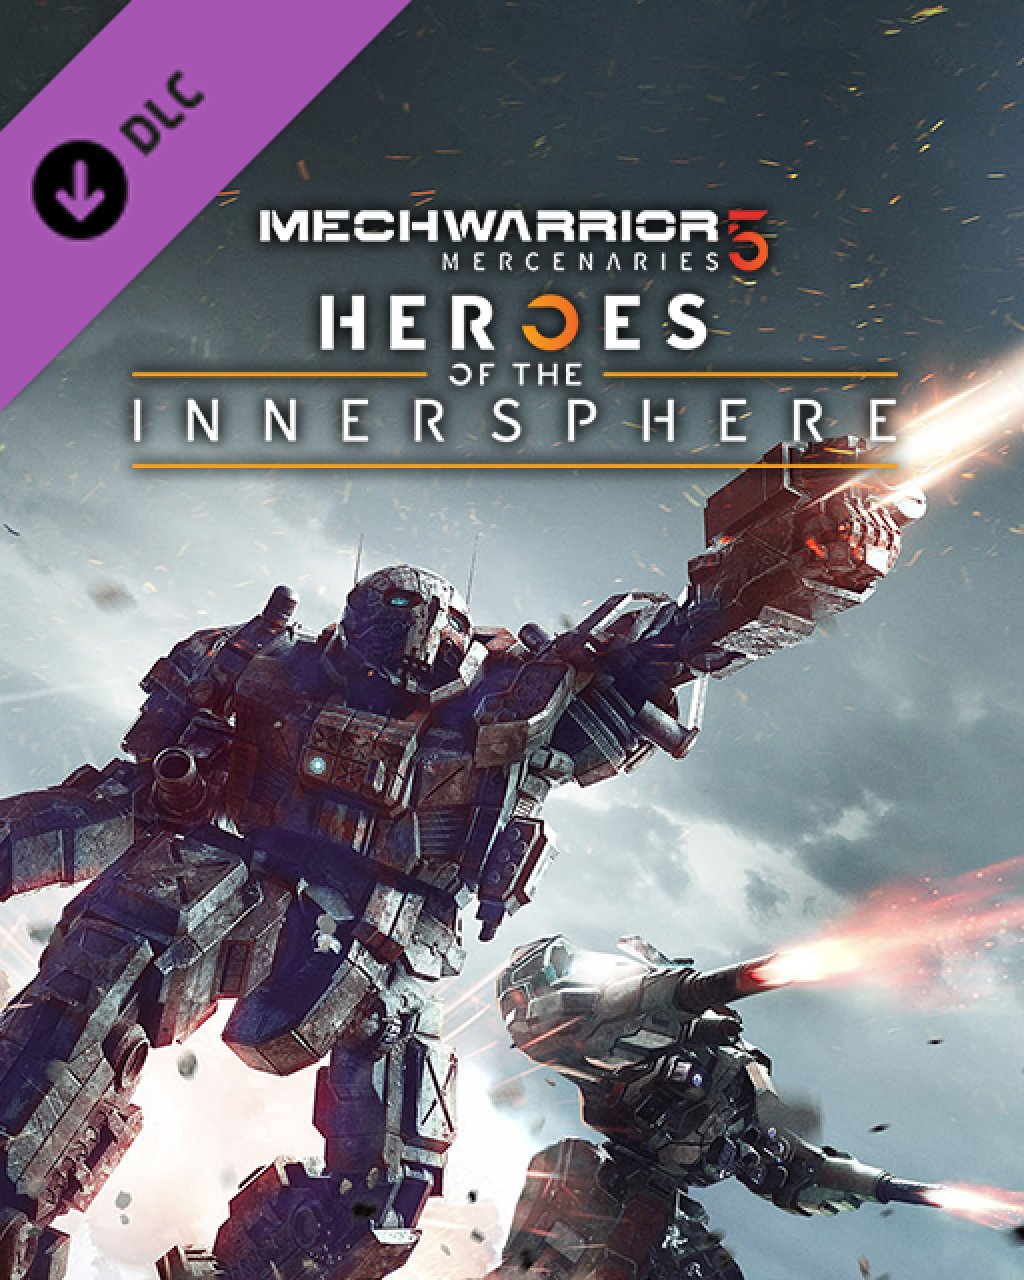 MechWarrior 5 Mercenaries Heroes of the Inner Sphere